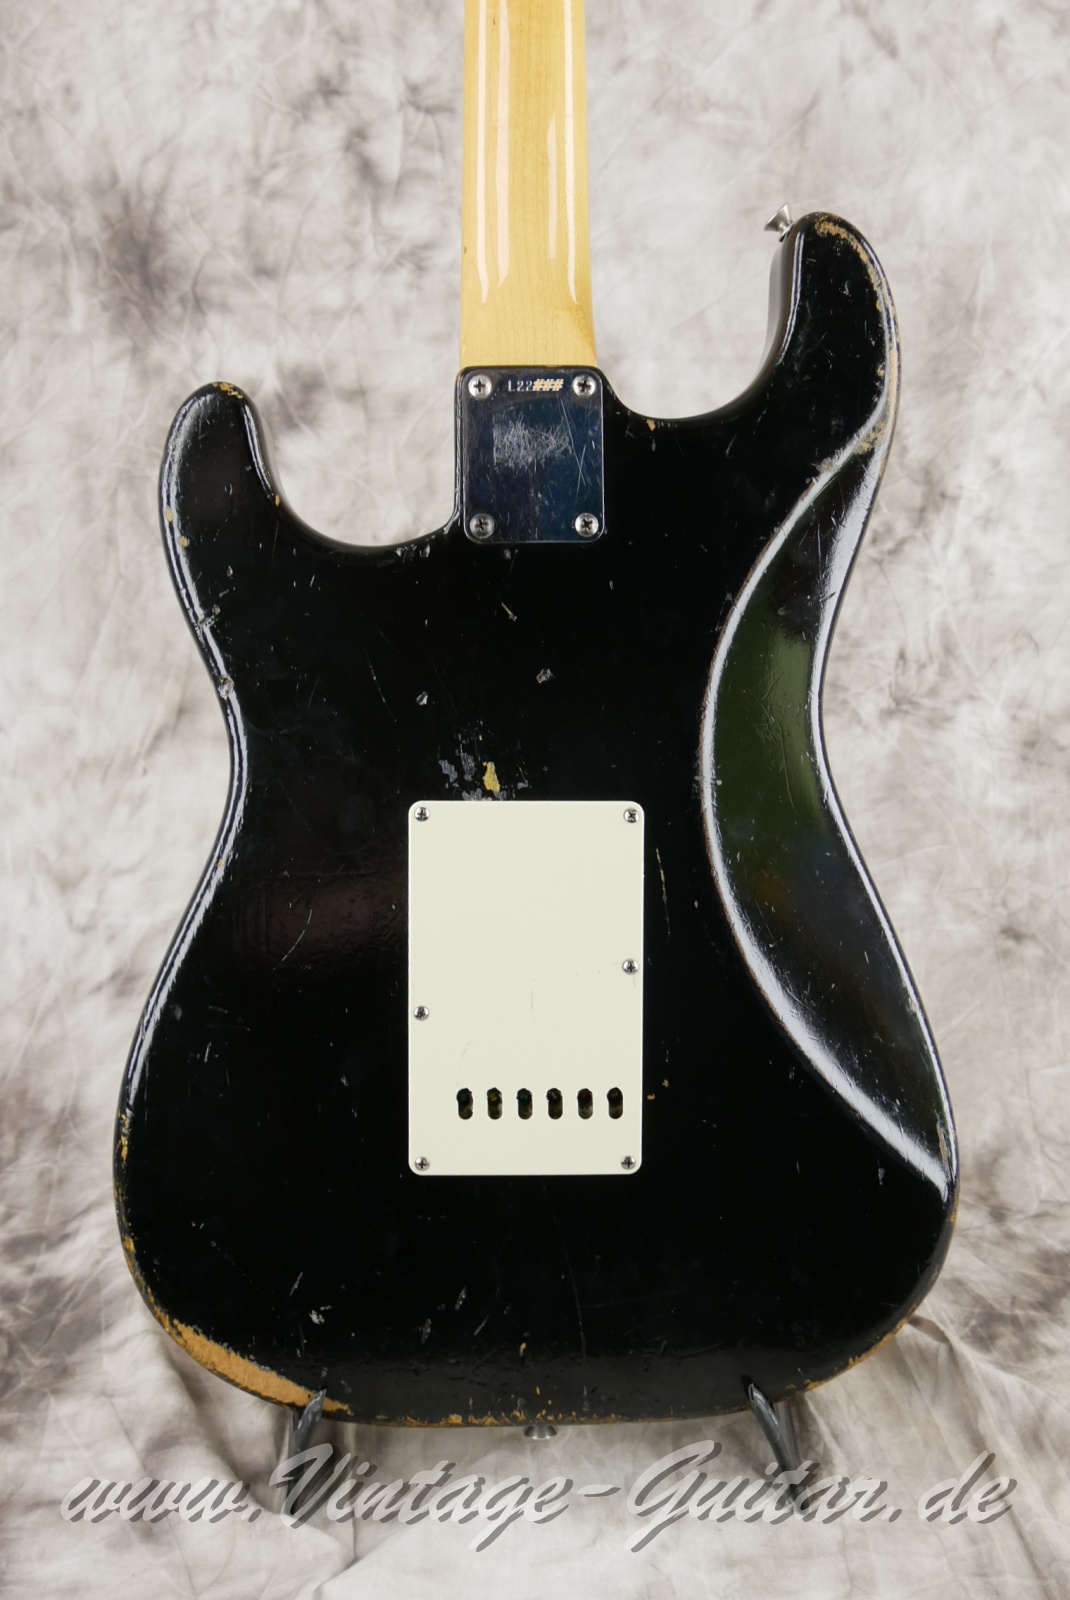 Fender-Stratocaster-1964-body-with-1969-neck-black-008.jpg